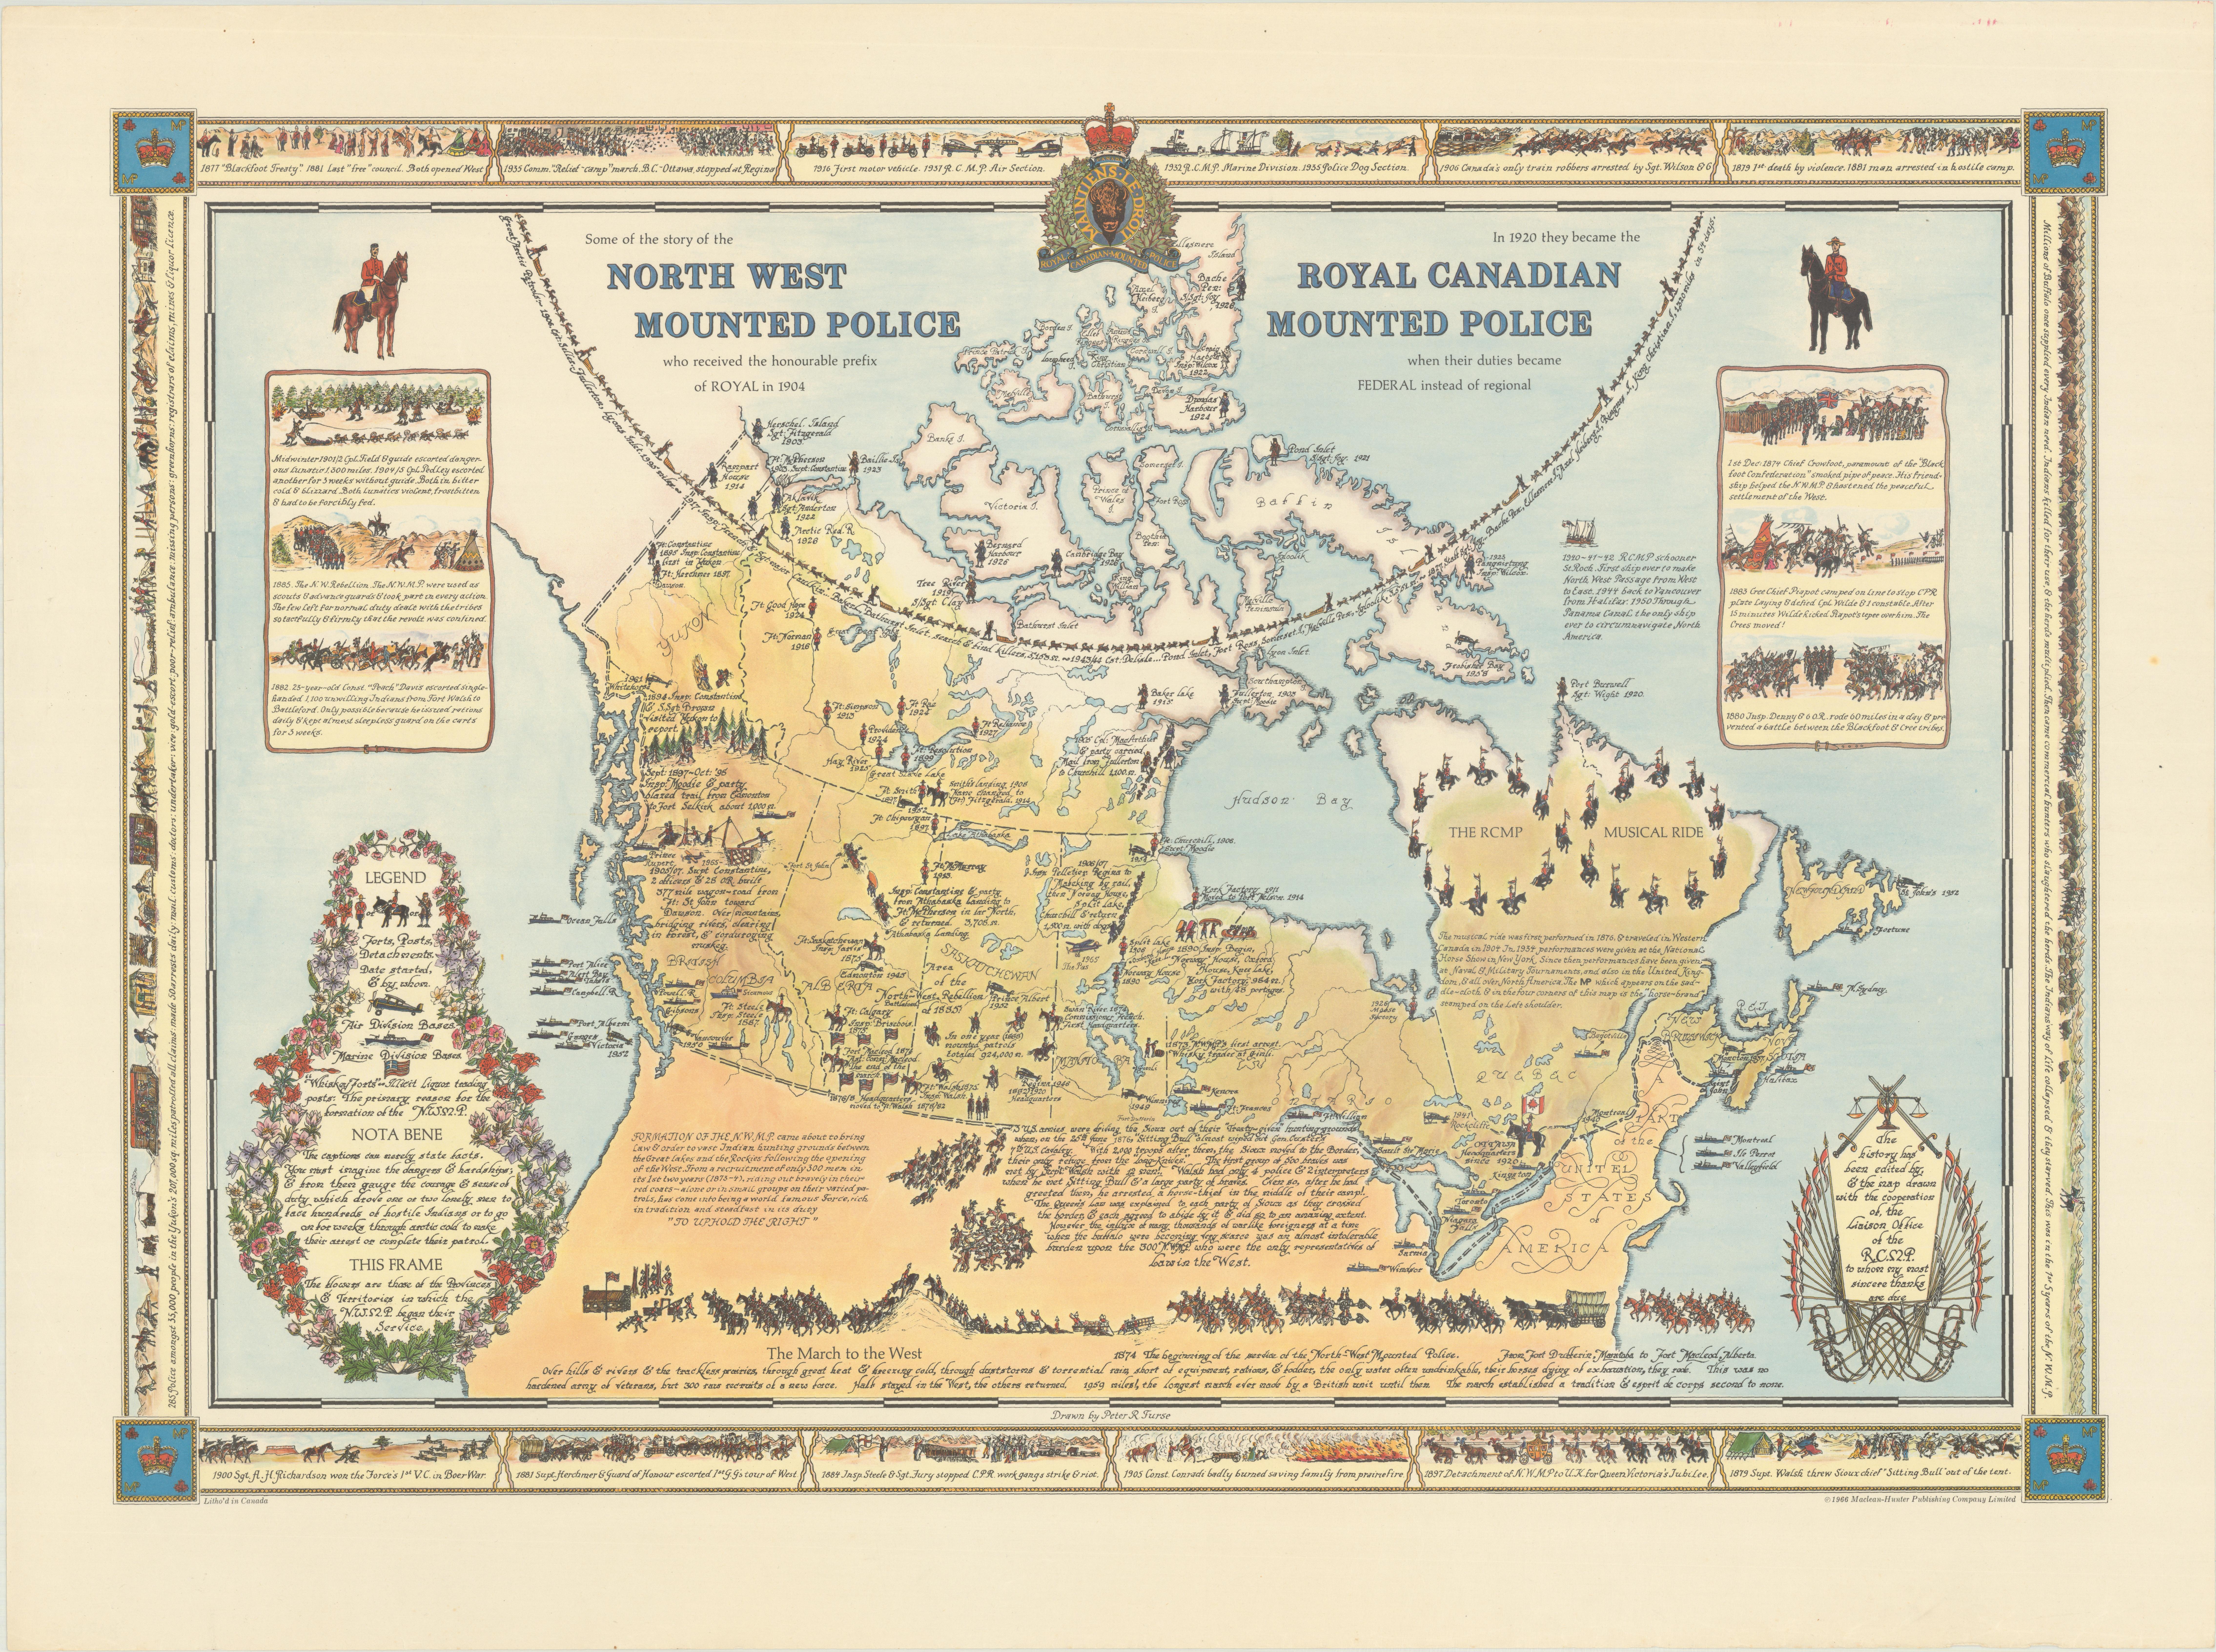 Diese seltene Bildkarte von Peter R. Furse zelebriert die Geschichte der Royal Canadian Mounted Police. Es wurde in Zusammenarbeit mit der RCMP hergestellt, wie in einer eleganten Kartusche unten rechts bestätigt wird. Die Landschaft ist gefüllt mit